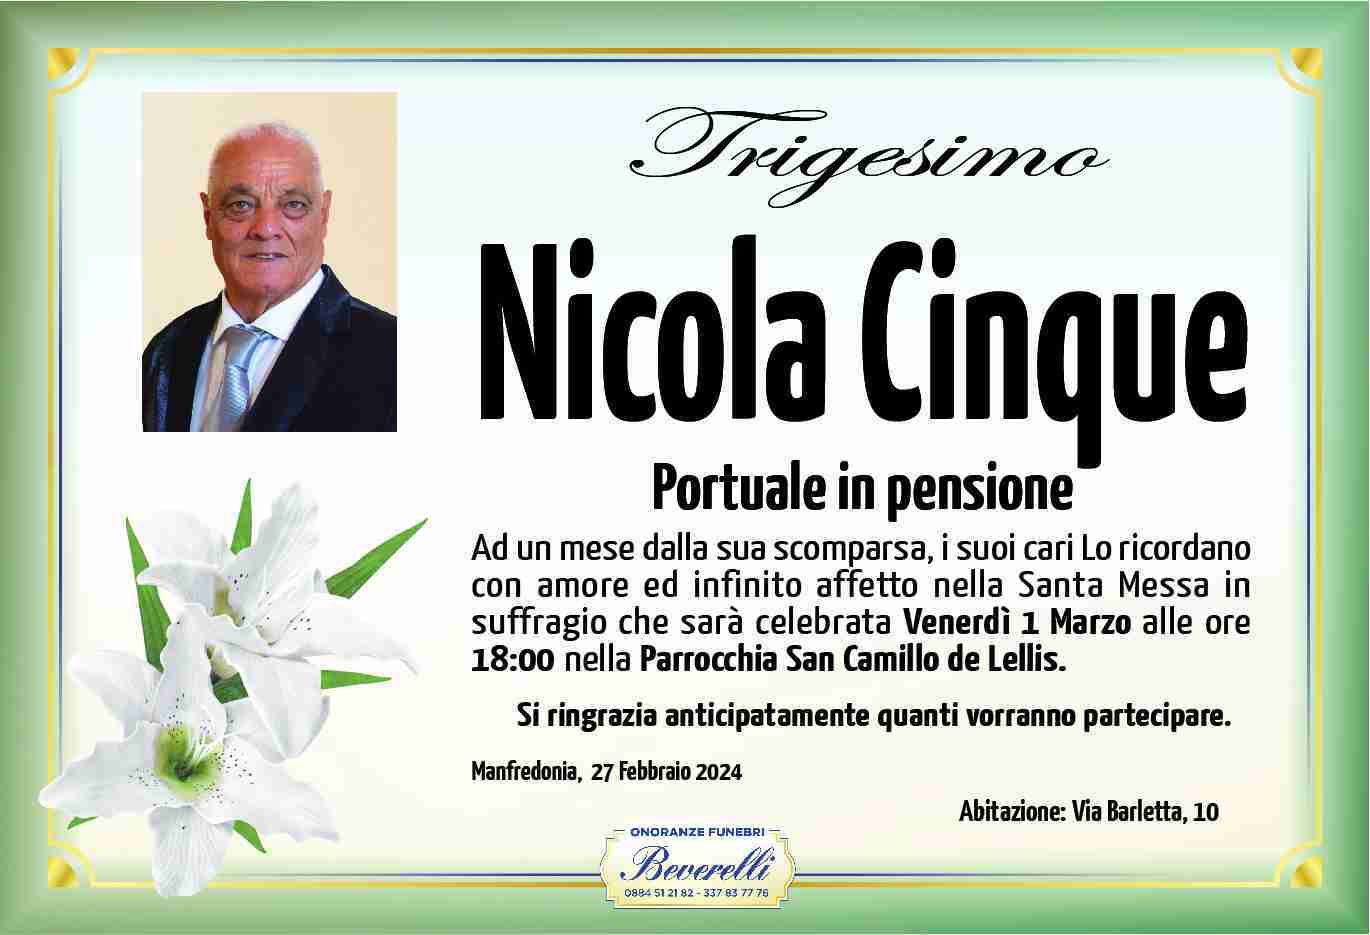 Nicola Cinque